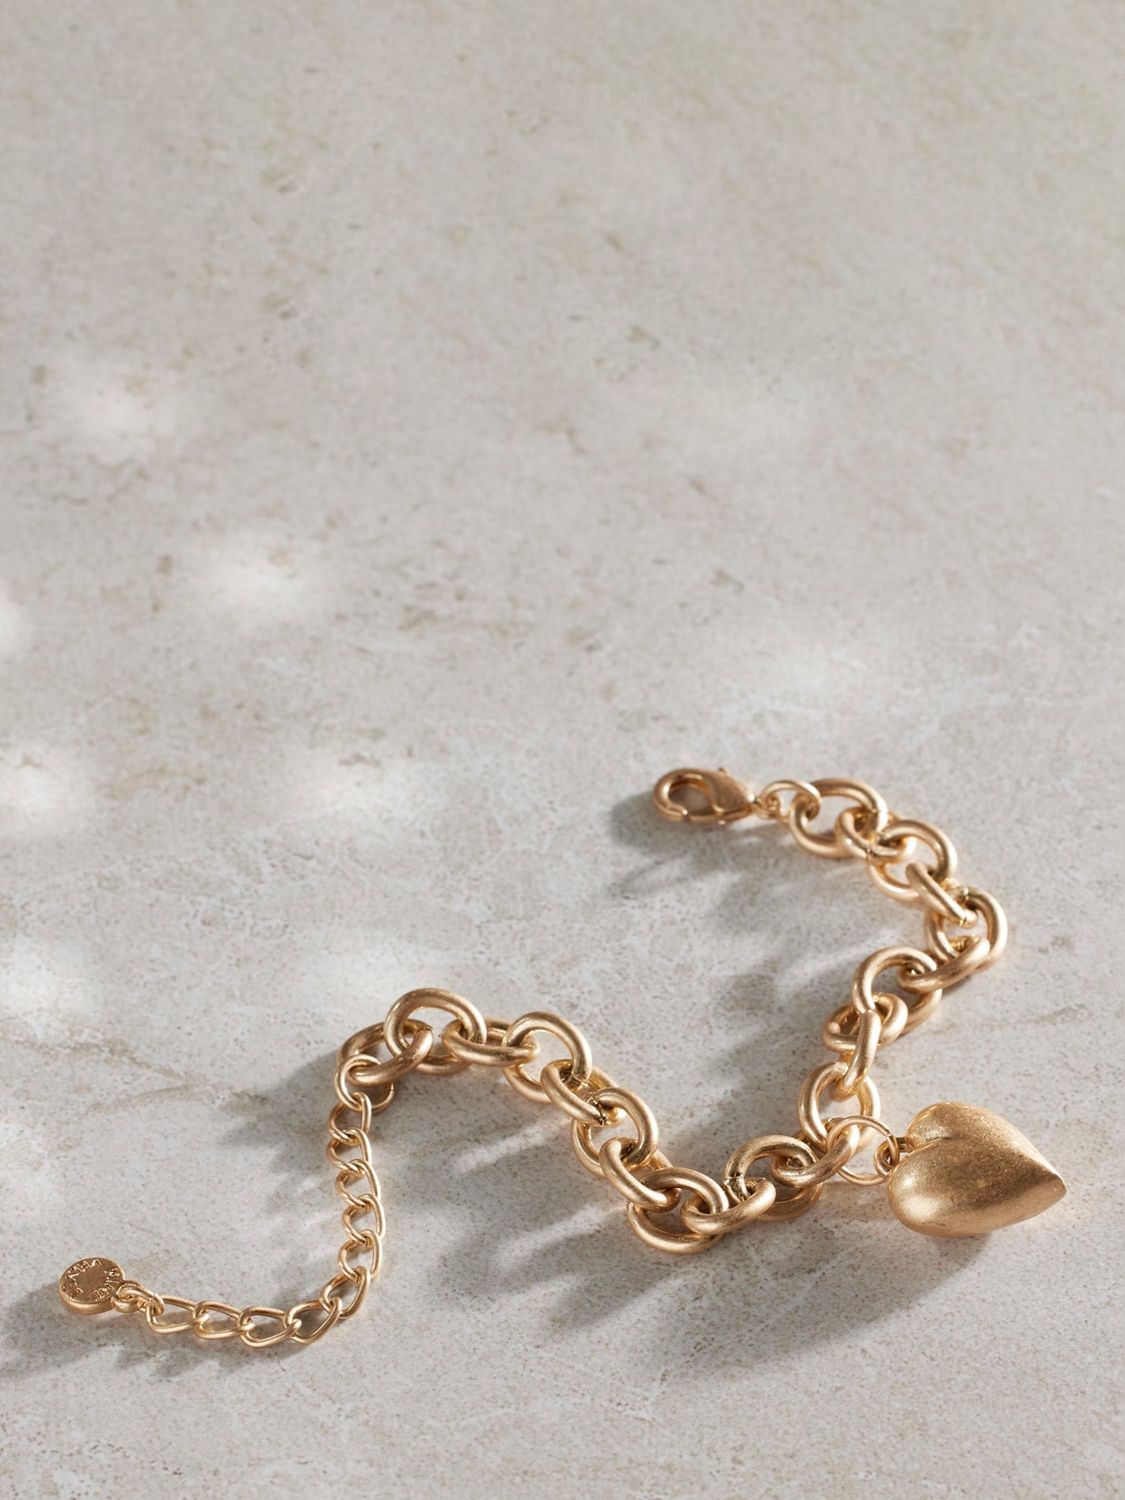 Mint Velvet Heart Charm Bracelet, Gold, One Size